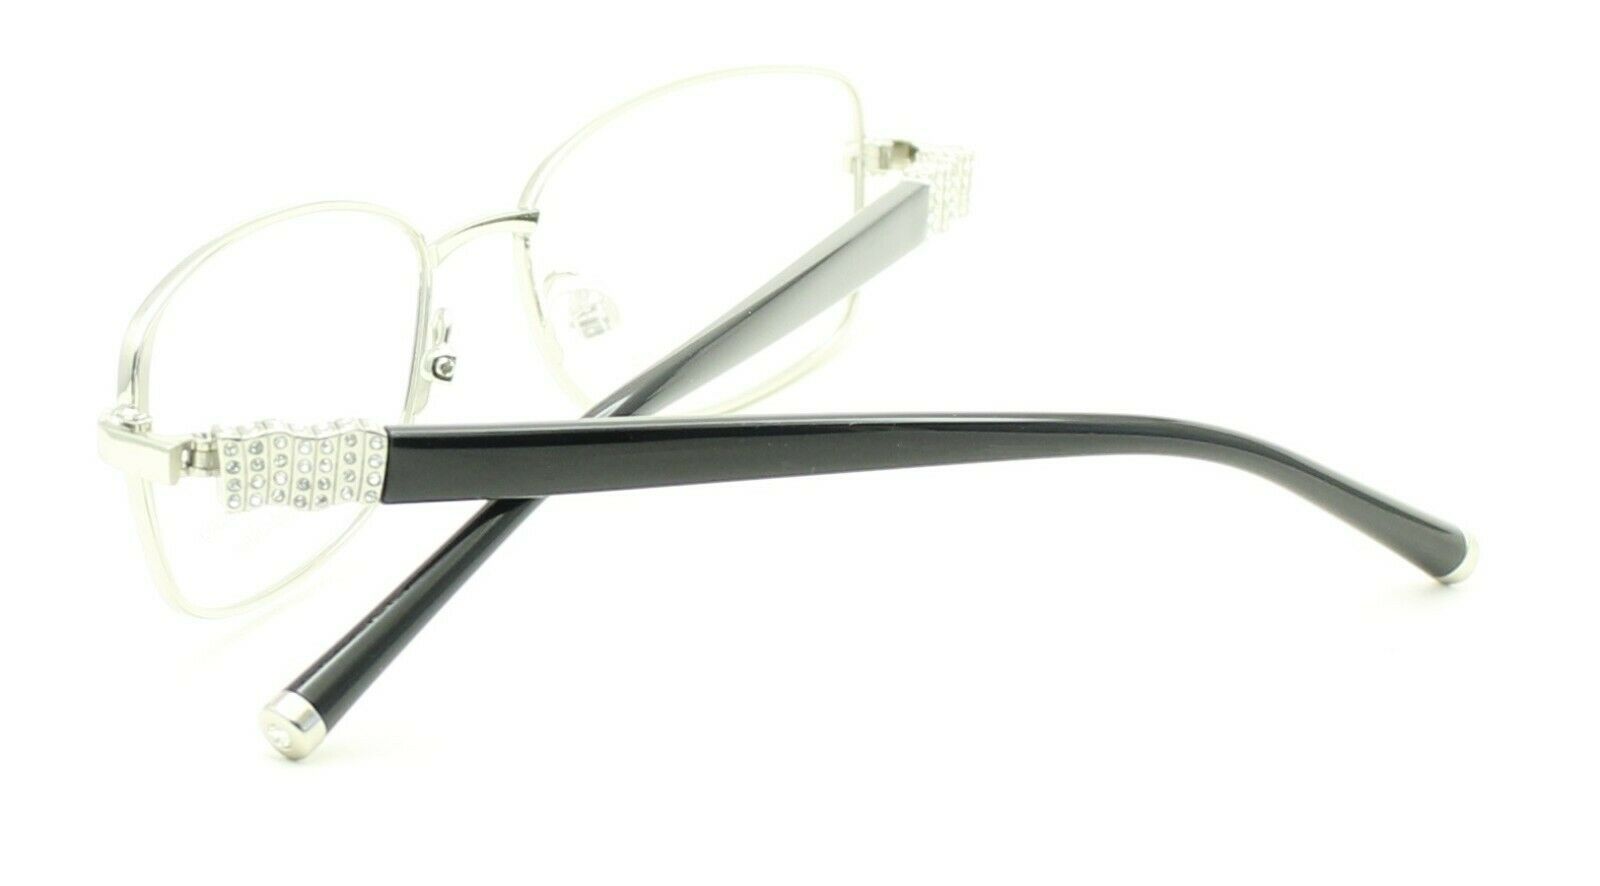 HERITAGE Iconic Luxury HEDF24 SS Eyewear FRAMES Eyeglasses RX Optical Glasses